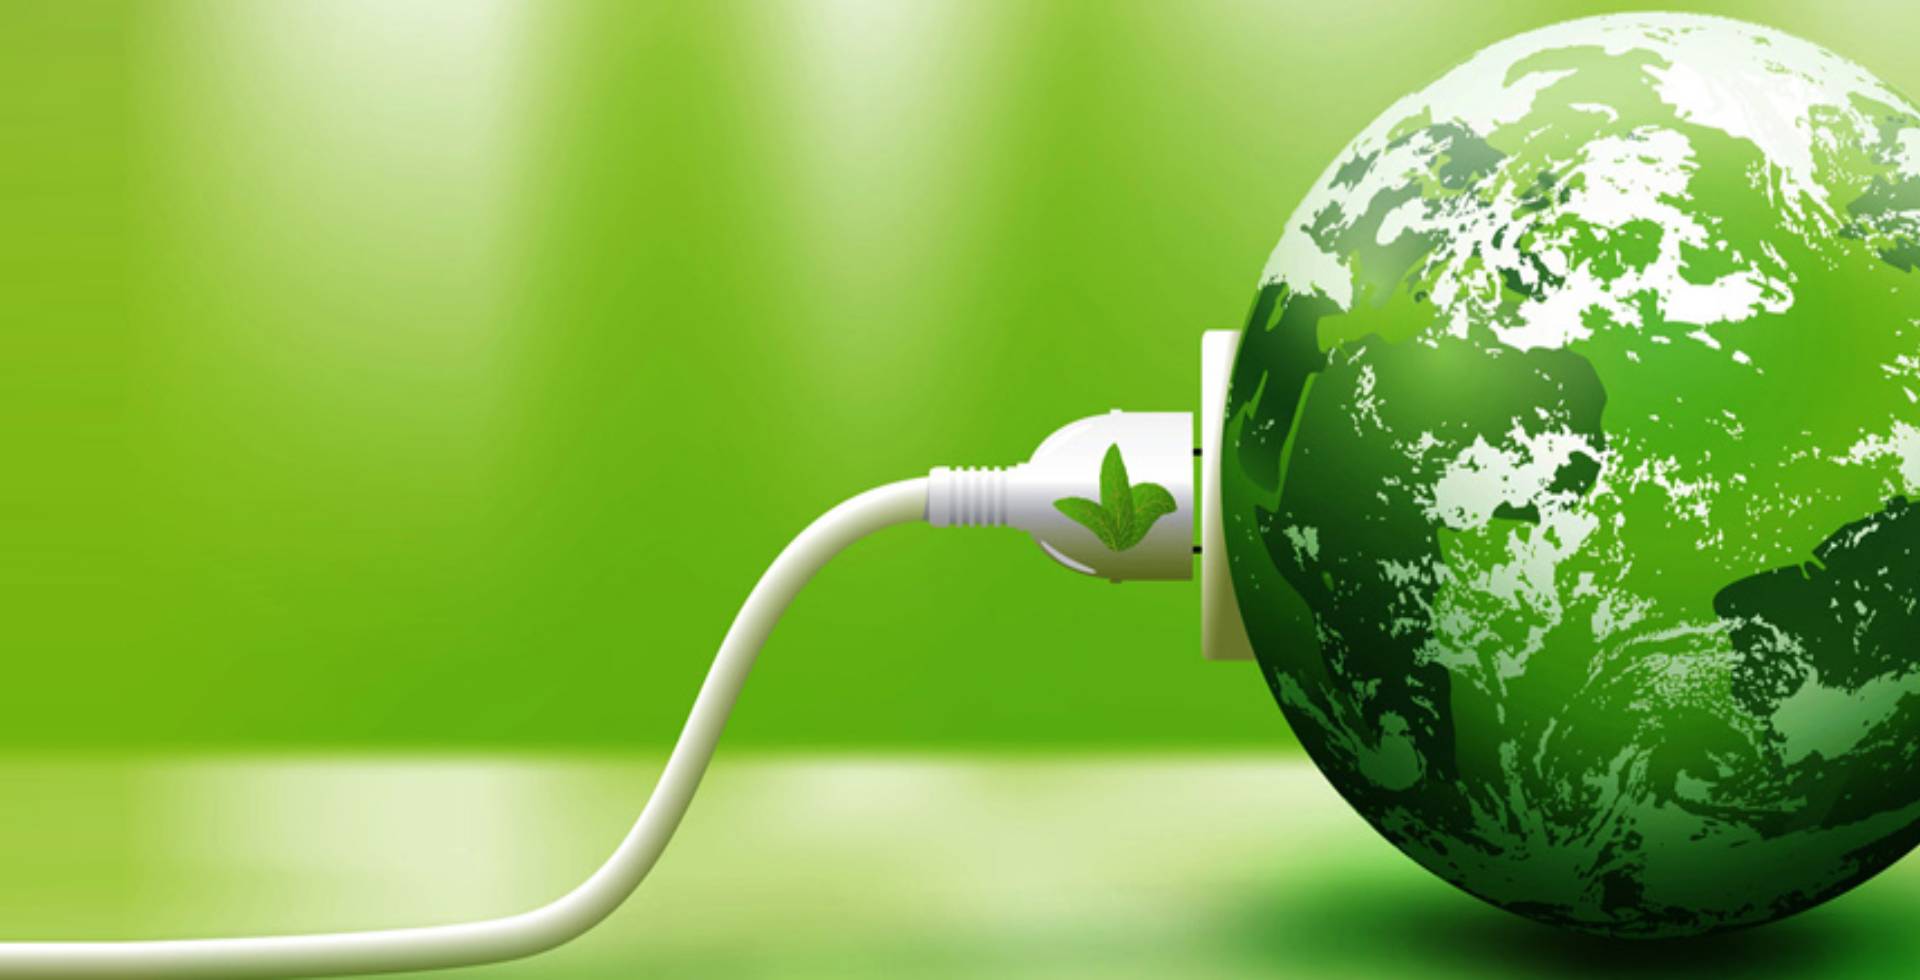 Planeta Tierra de color verde conectado a un enchufe con una hoja verde en el cabezal